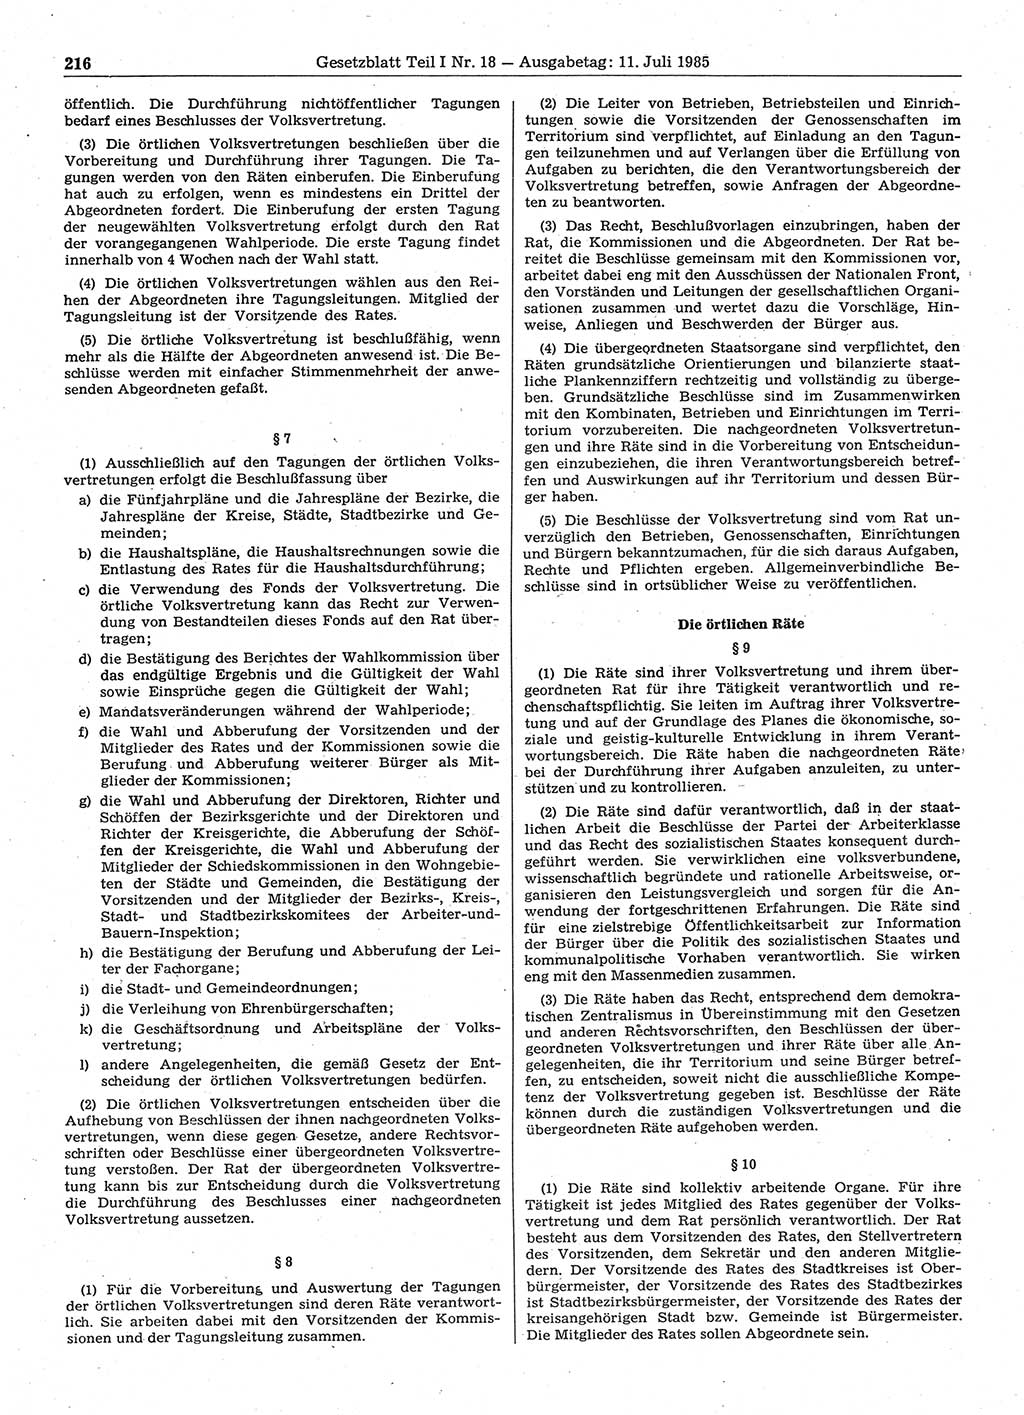 Gesetzblatt (GBl.) der Deutschen Demokratischen Republik (DDR) Teil Ⅰ 1985, Seite 216 (GBl. DDR Ⅰ 1985, S. 216)